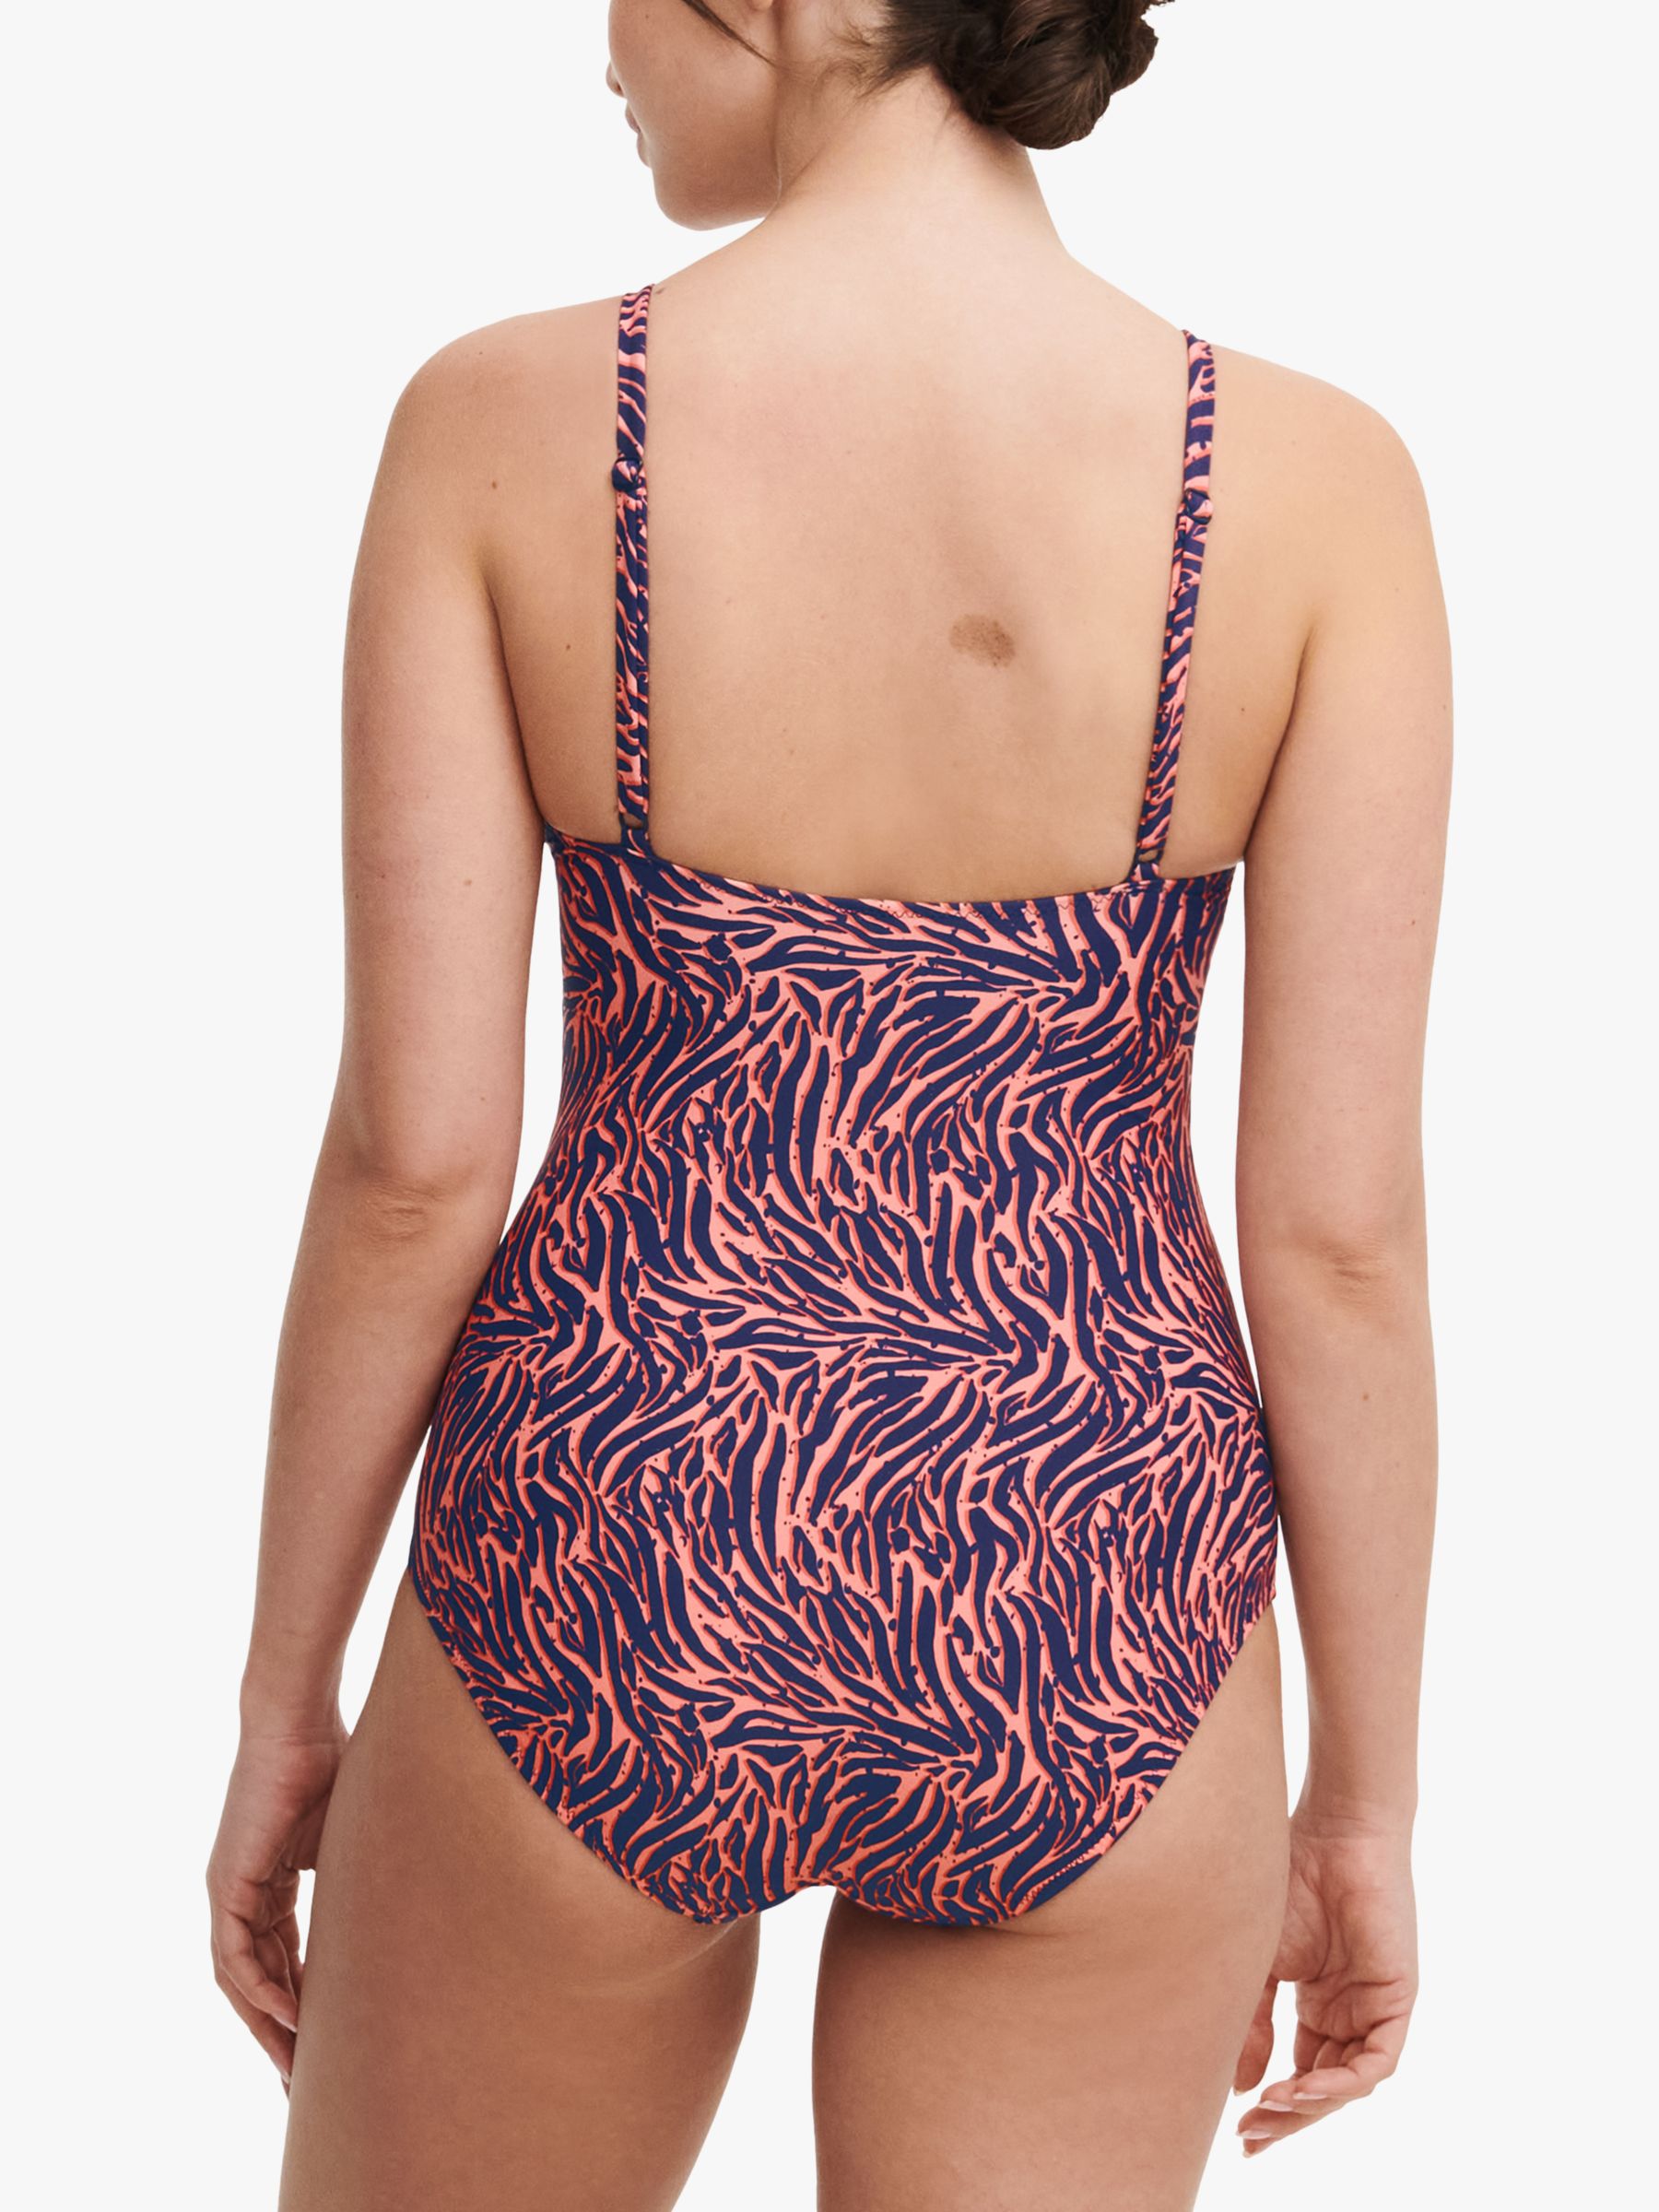 Femilet Tidra Zebra Print Swimsuit, Coral/Multi, S